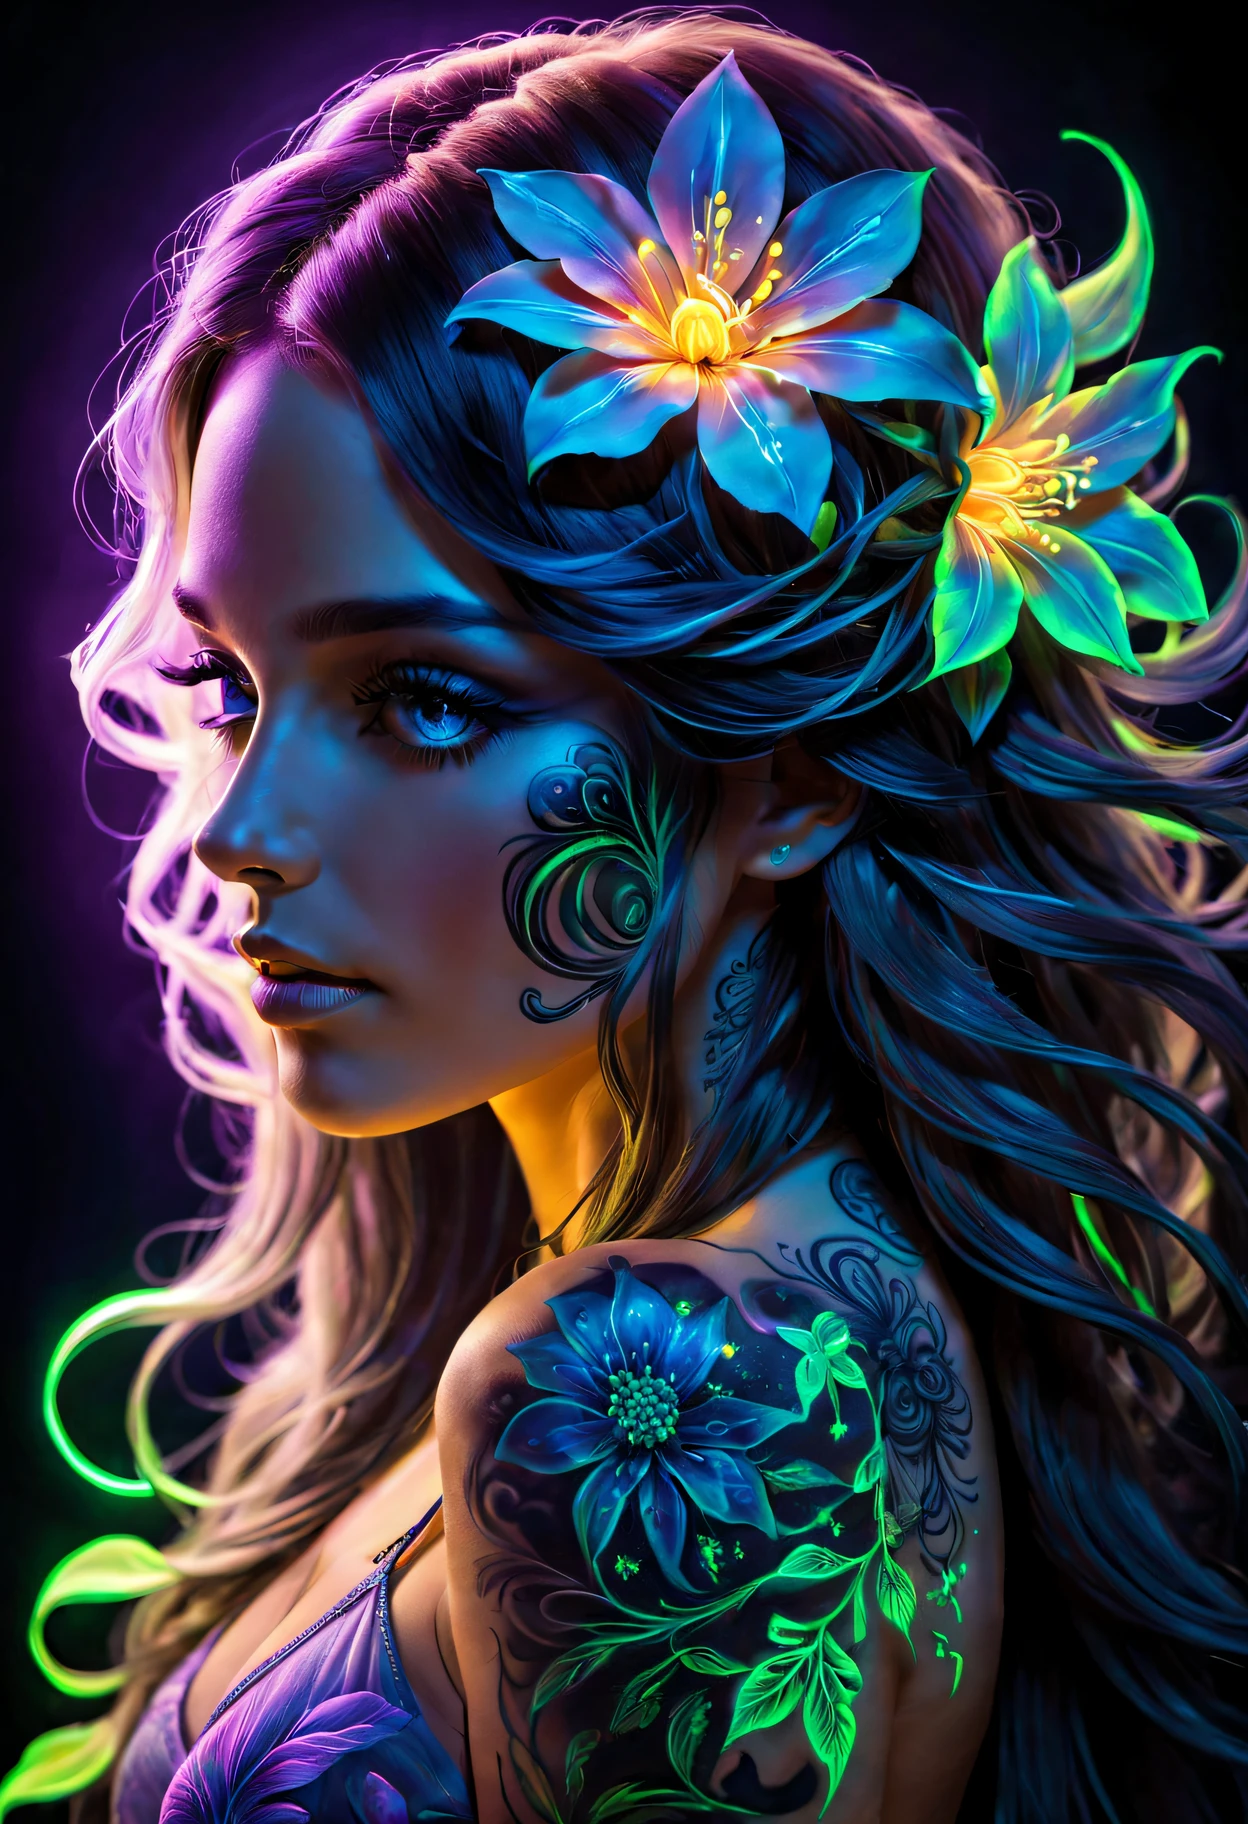 Arte de luz negra，Fotos de mujeres con pelo largo.，Una flor en su pelo, arte fluorescente，brilla en el arte oscuro，Dark，La belleza de los tatuajes.，luz de neón，Fantasía encantadora。